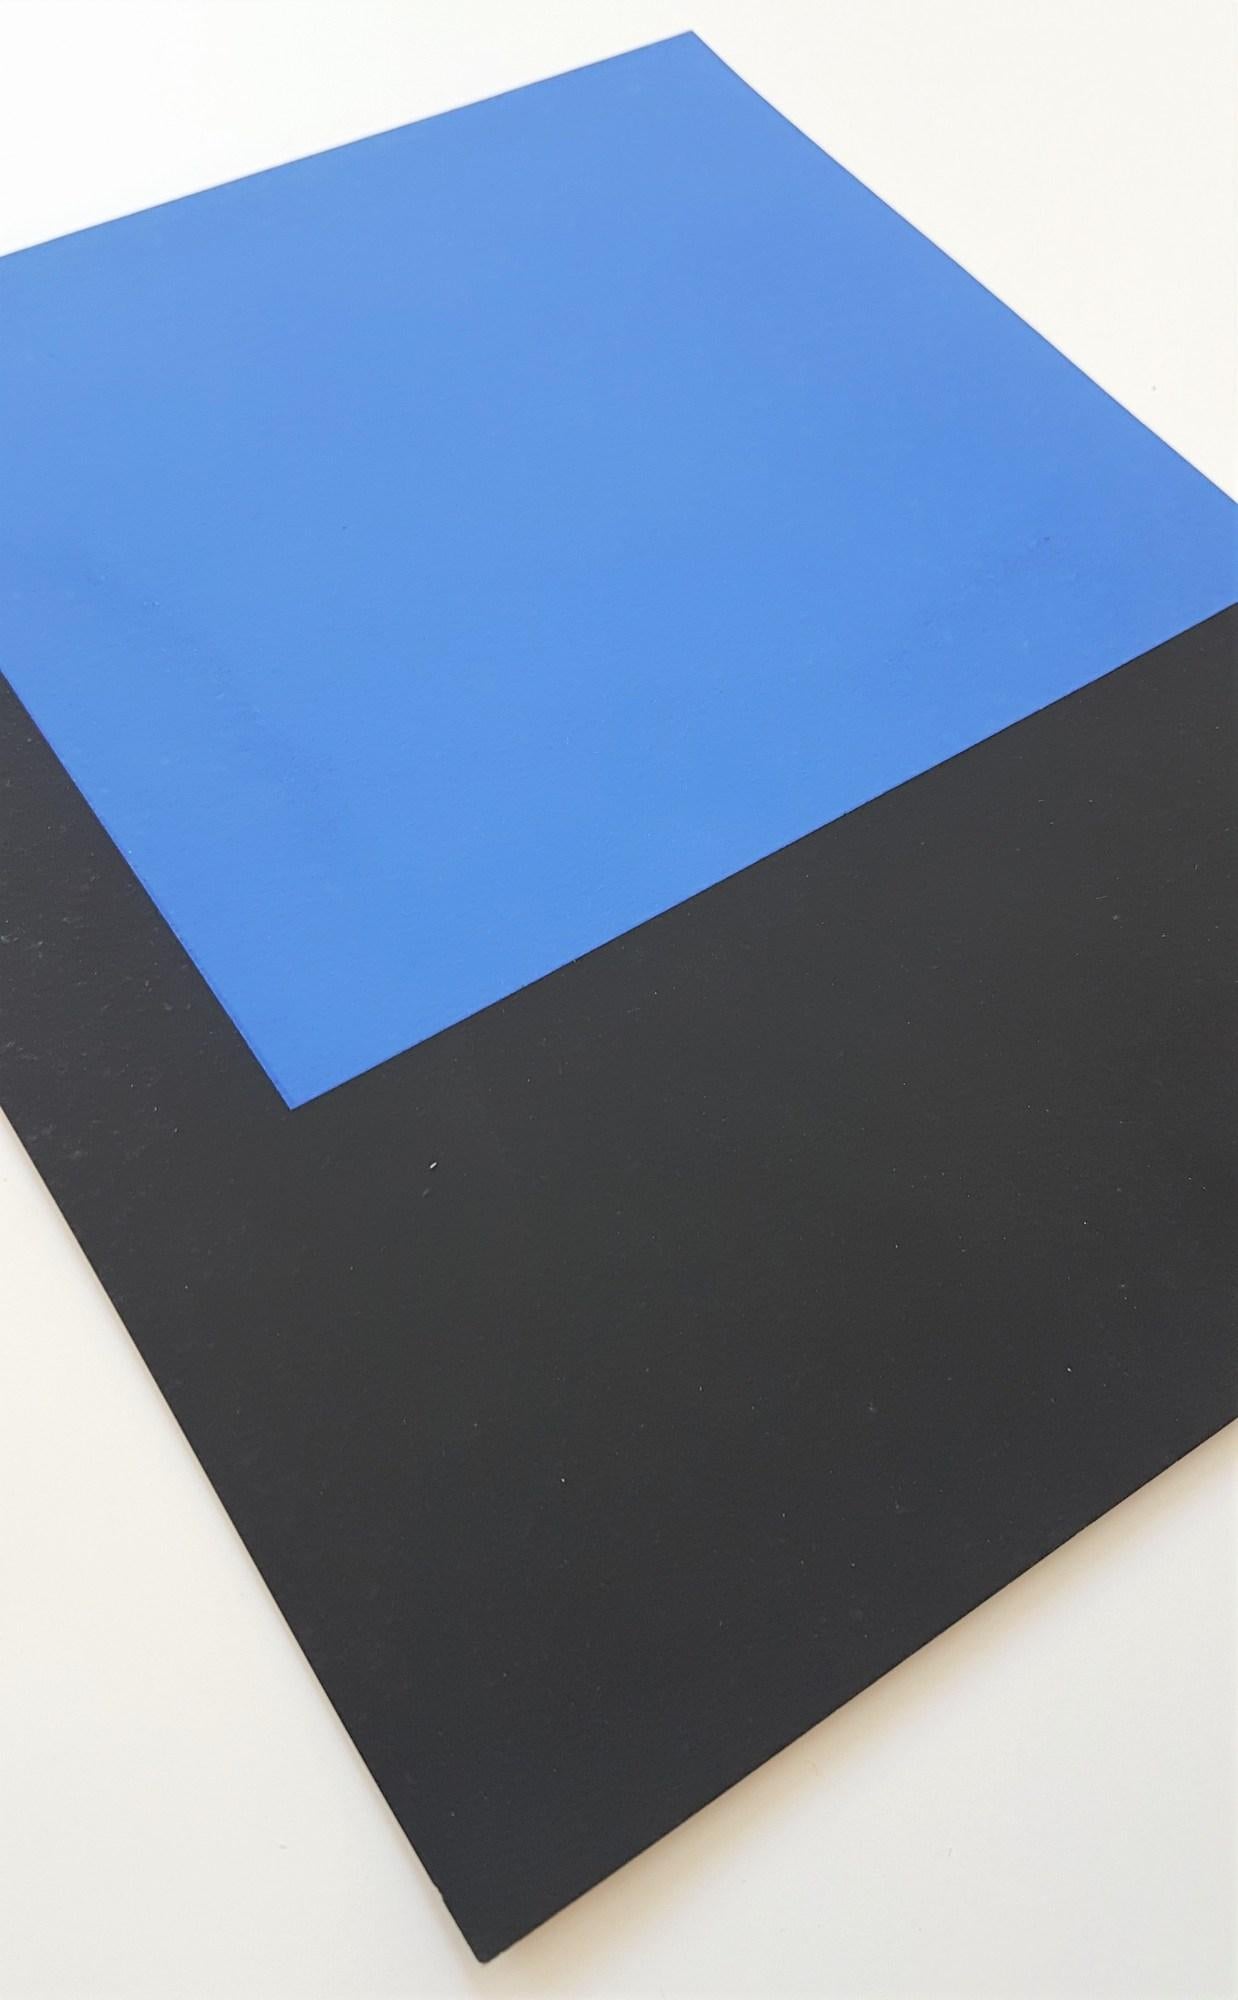 Abstract Geometric Composition (De Stijl, Neoplasticism, Geometric) - Blue Abstract Print by Aurélie Nemours